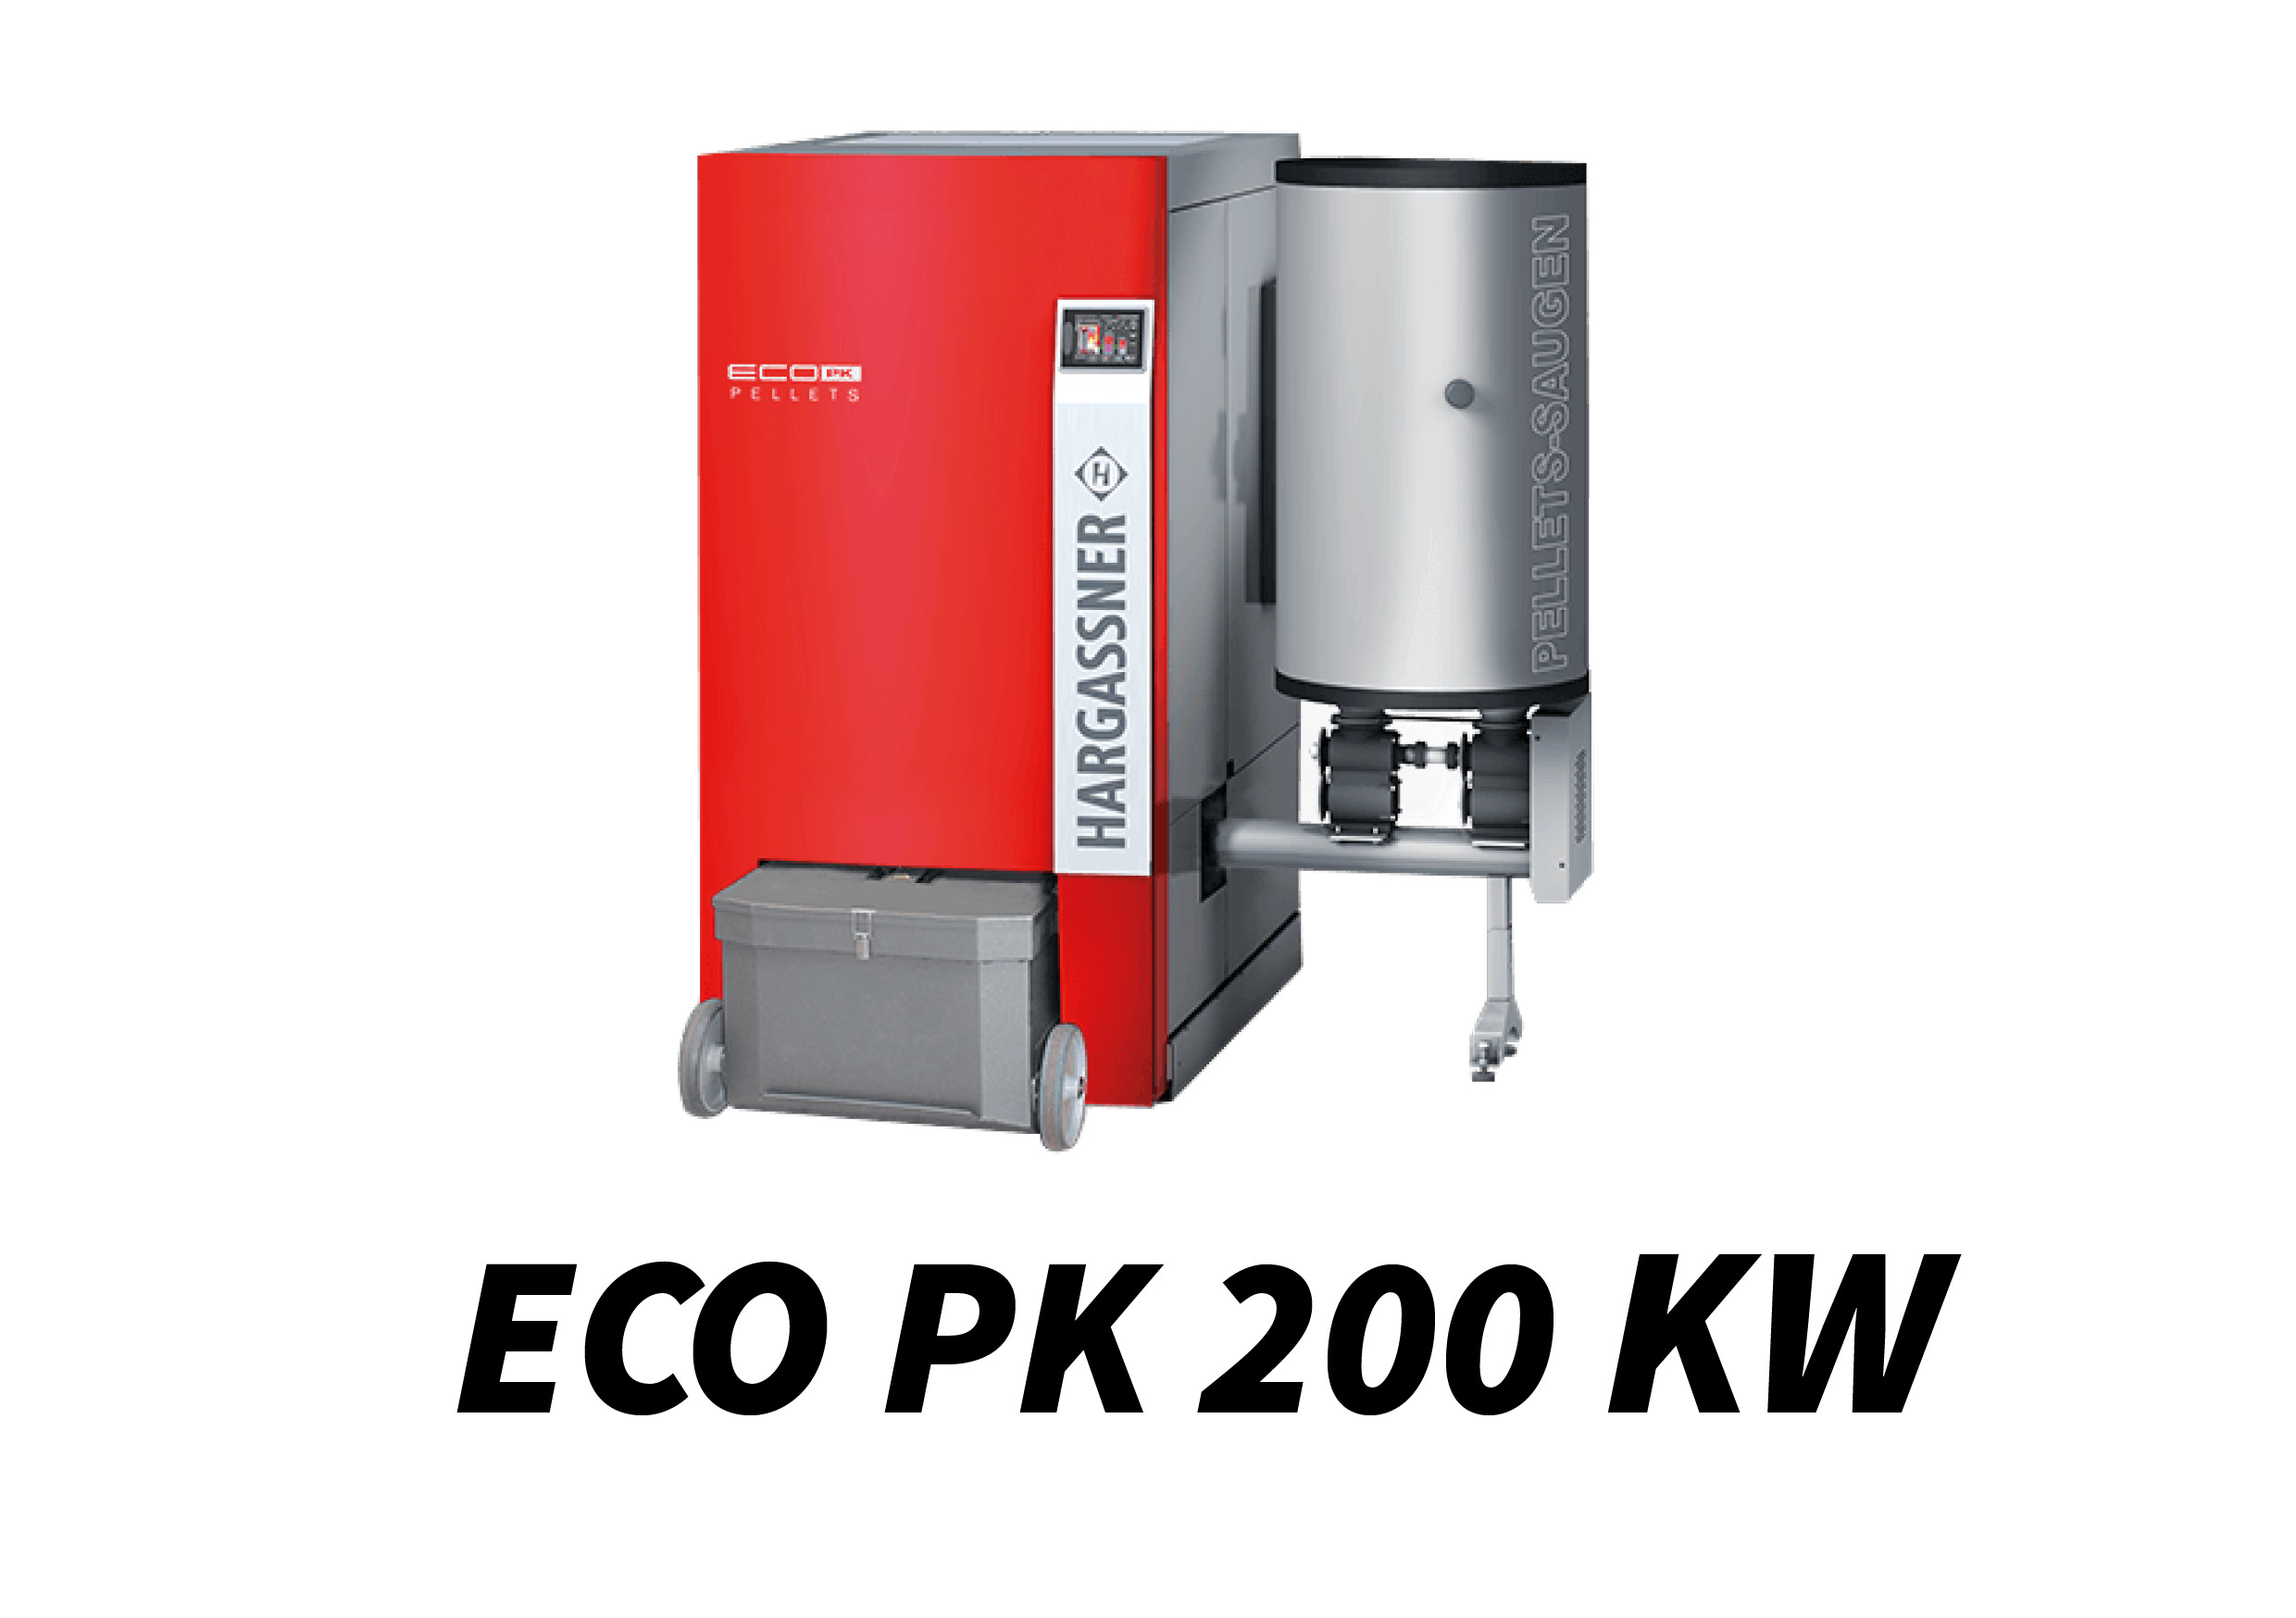 ECO PK 200 kW